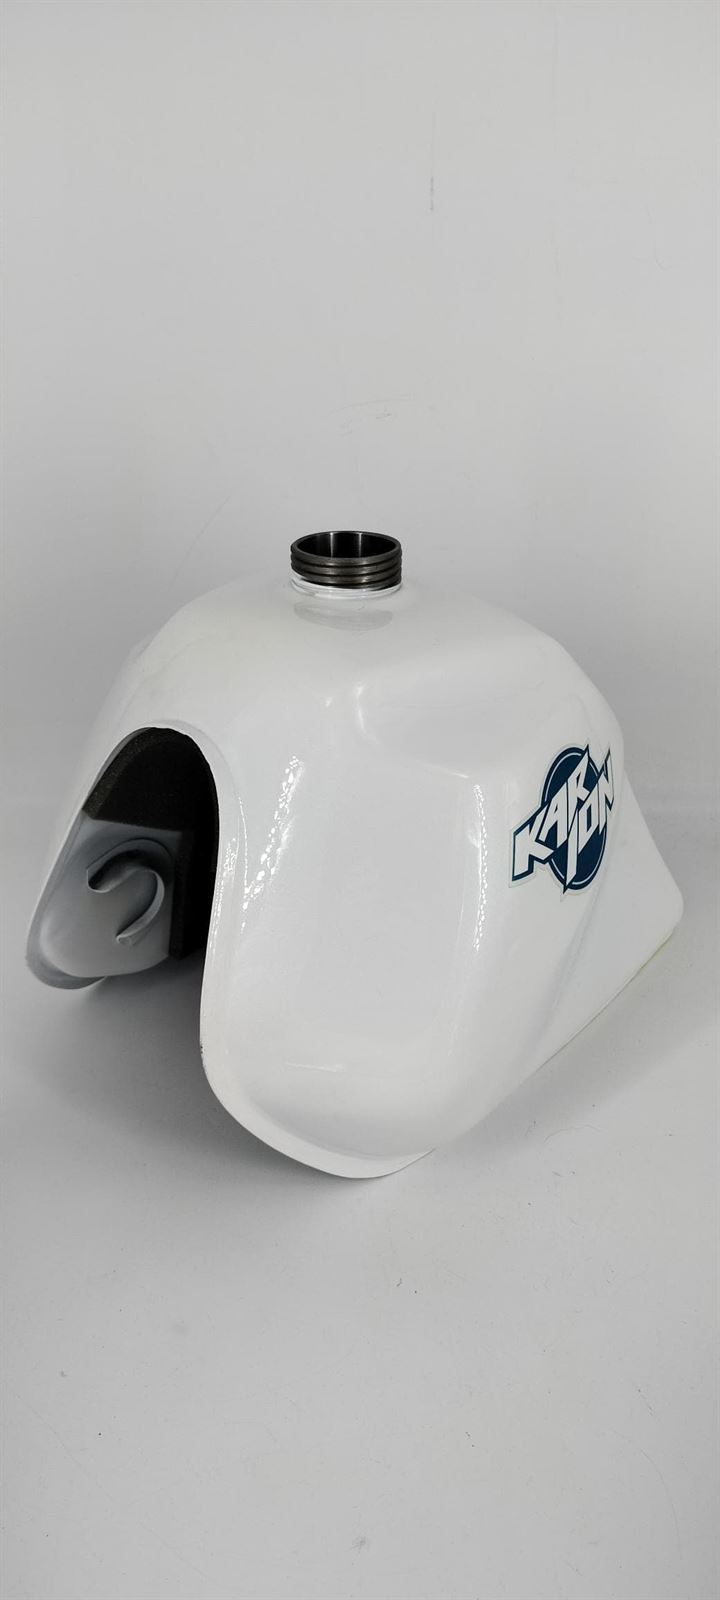 Depósito de gasolina Hyosung Karion 125 blanco - Imagen 3